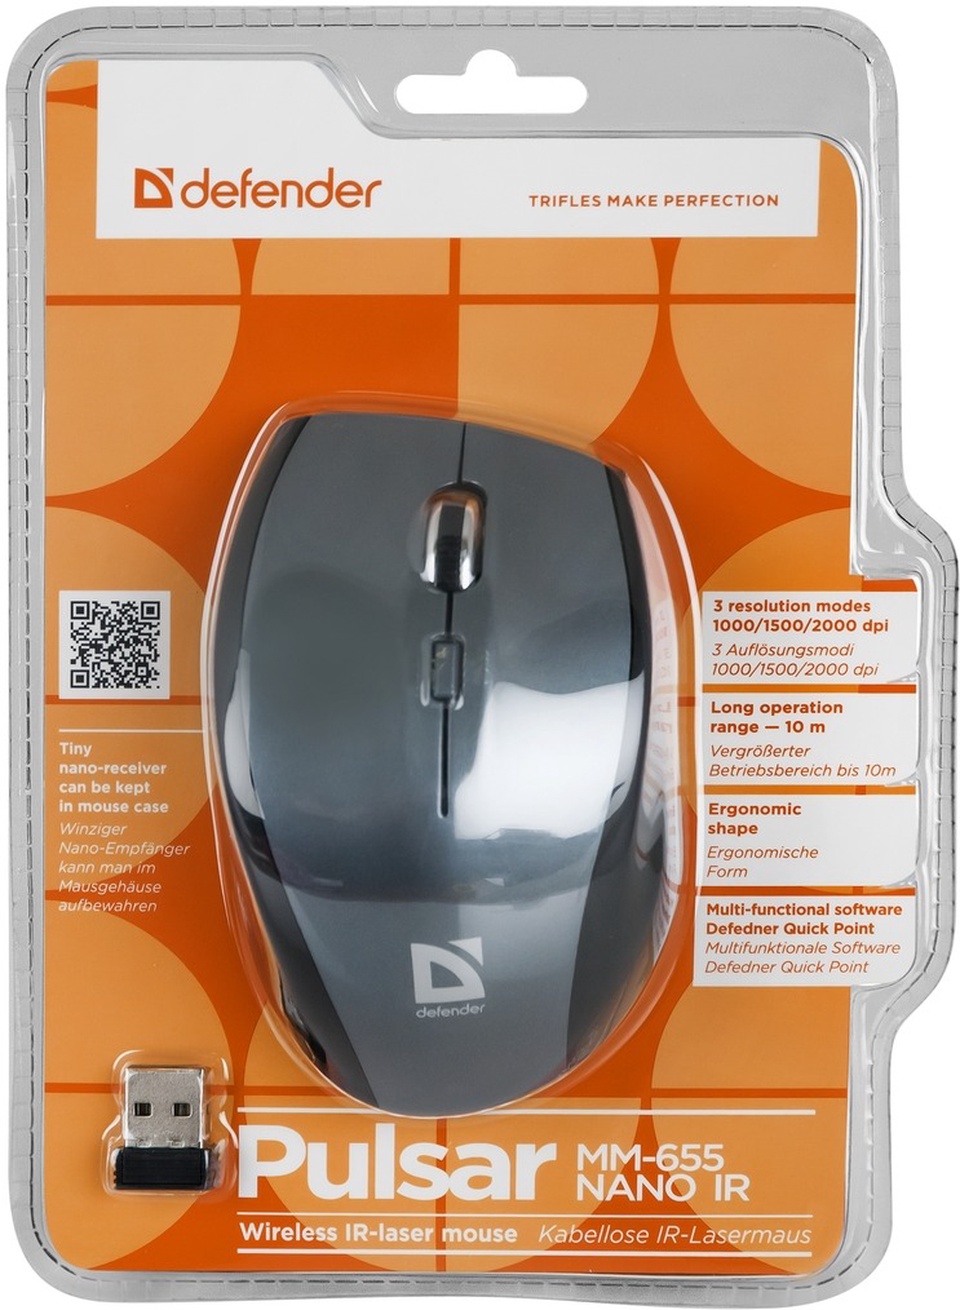 Беспроводная мышь Defender Pulsar MM-655 - 800 ₽, заказать онлайн.